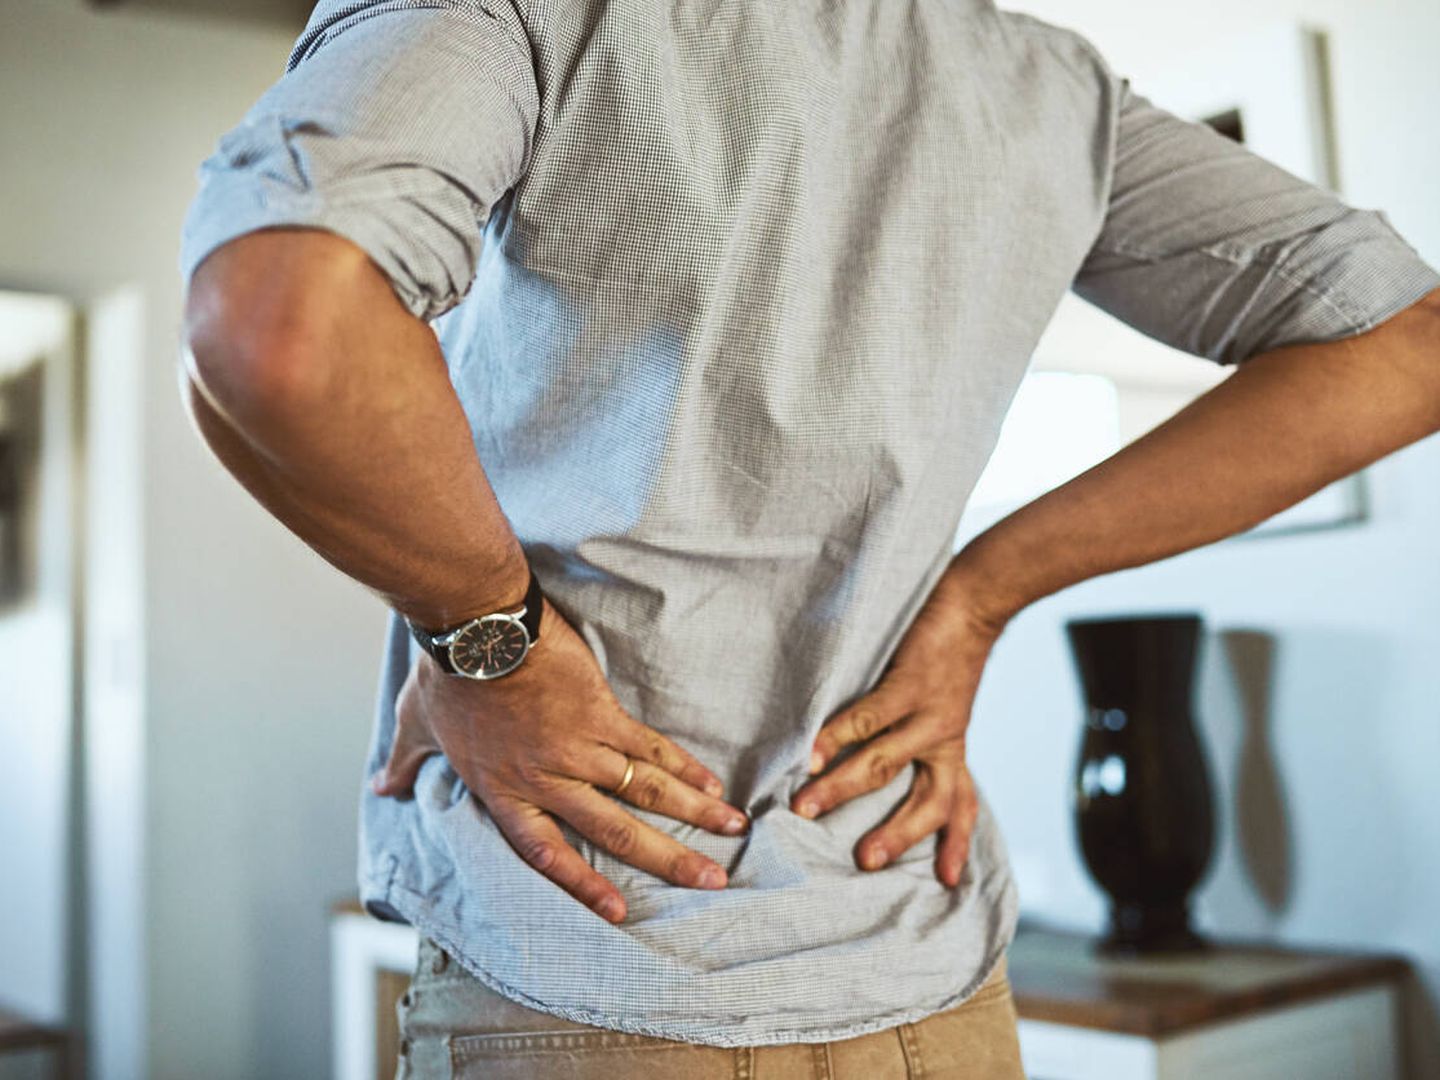 El 60% de los casos de dolor de espalda afecta a la zona lumbar. (iStock)